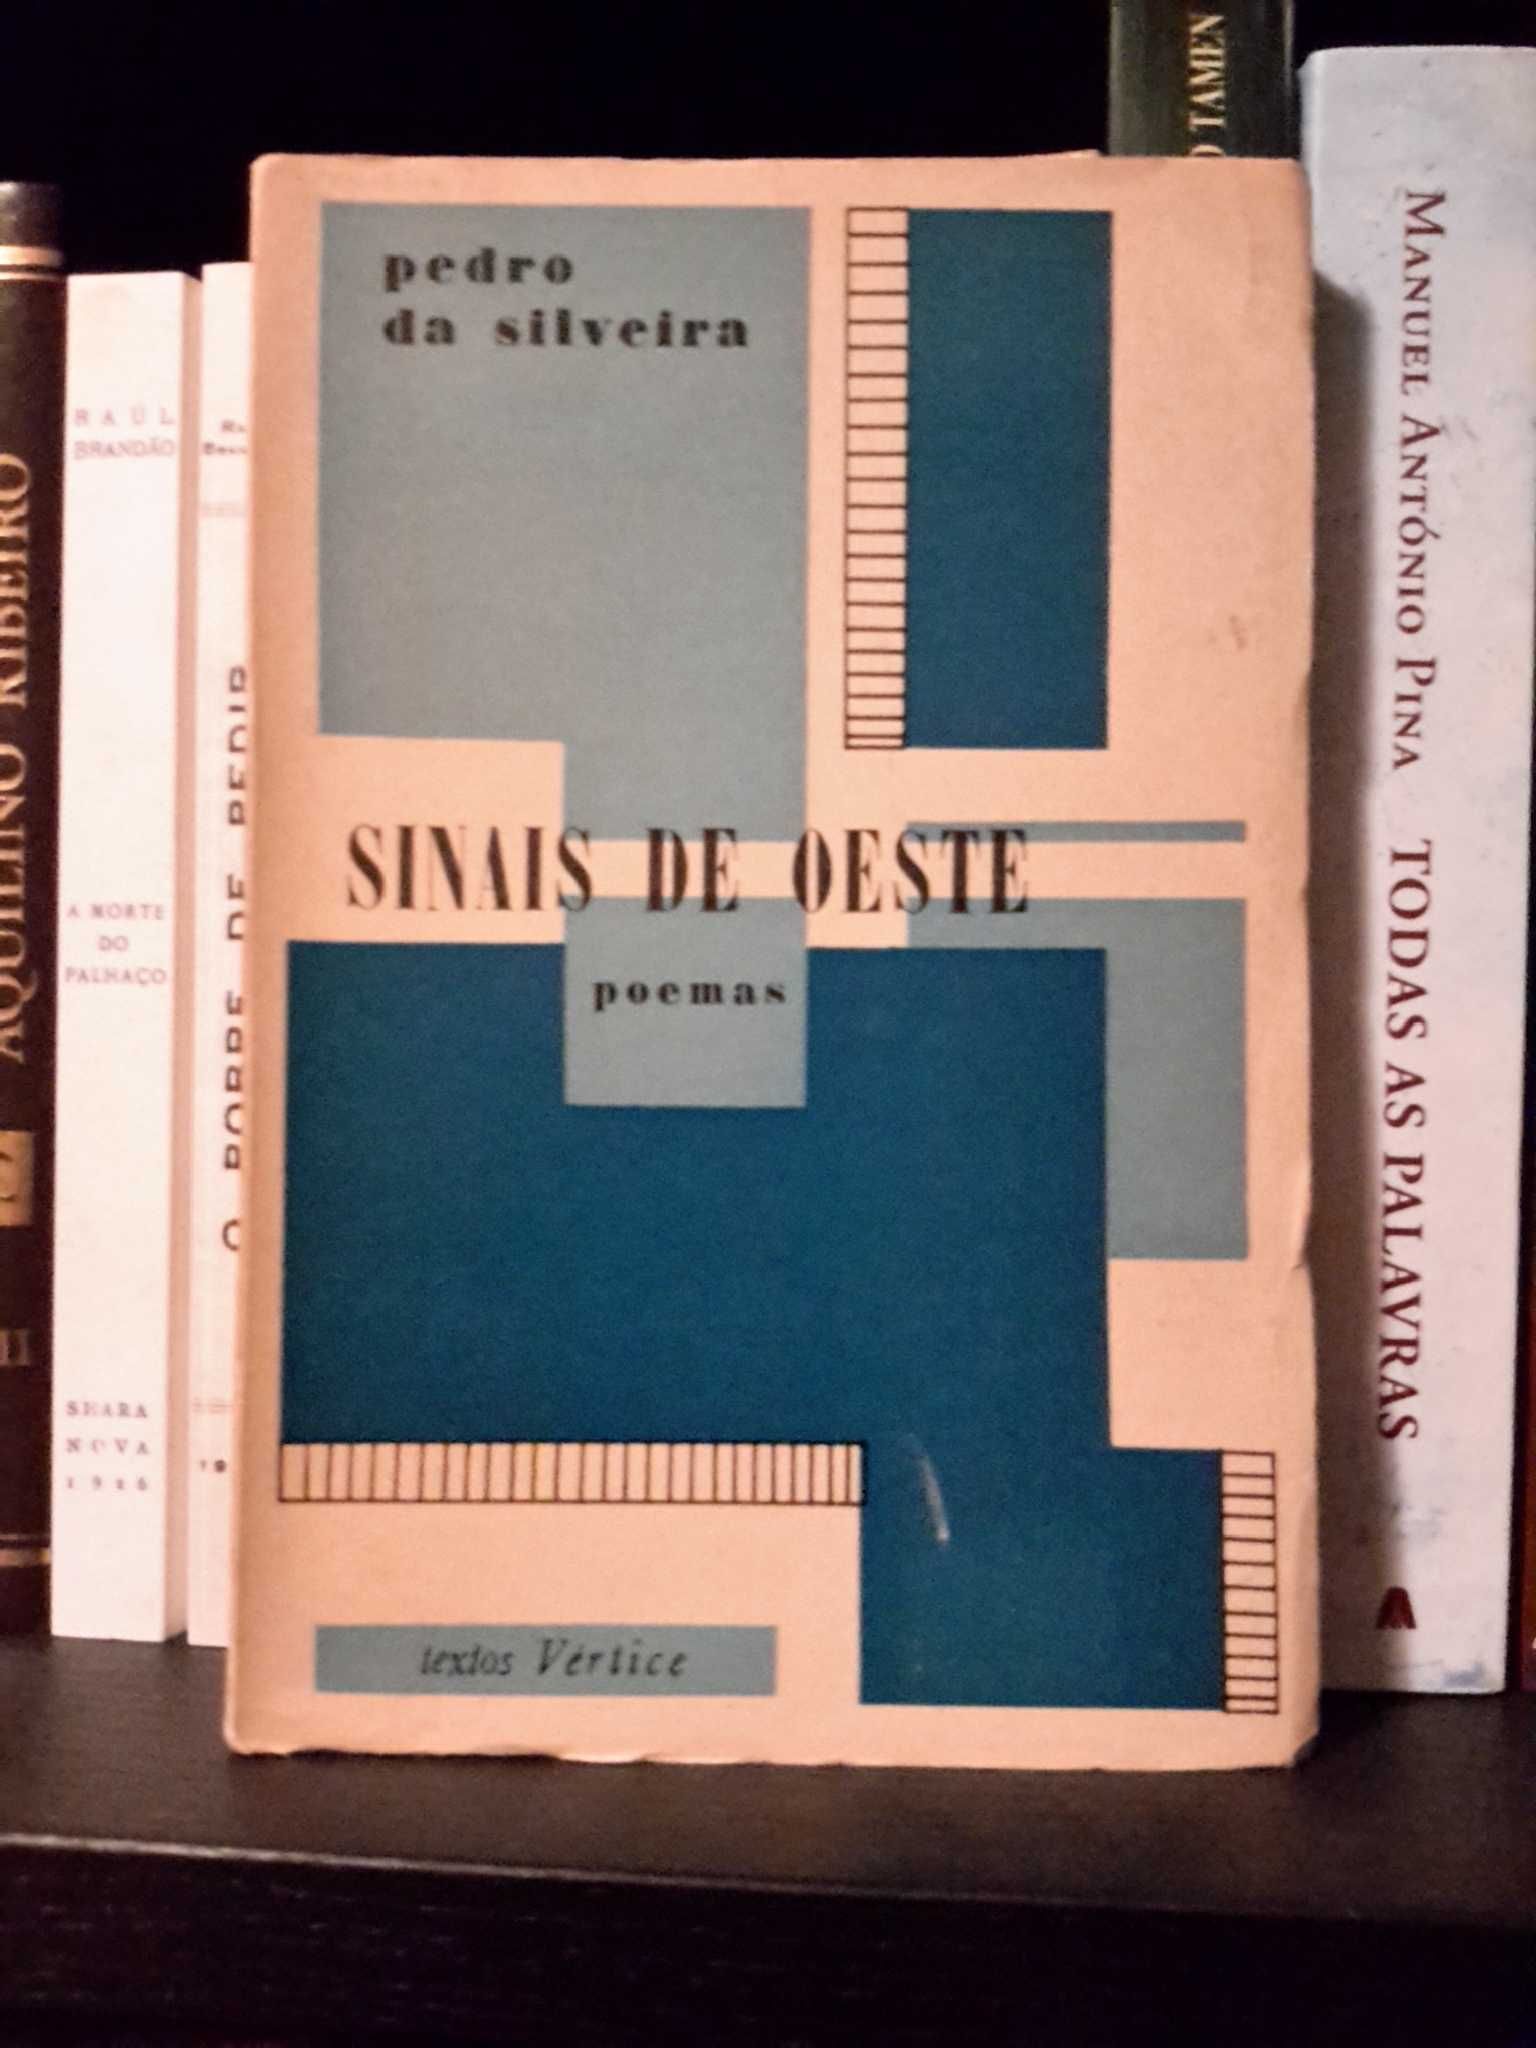 Pedro da Silveira - Sinais de Oeste (1.ª edição, 1962)